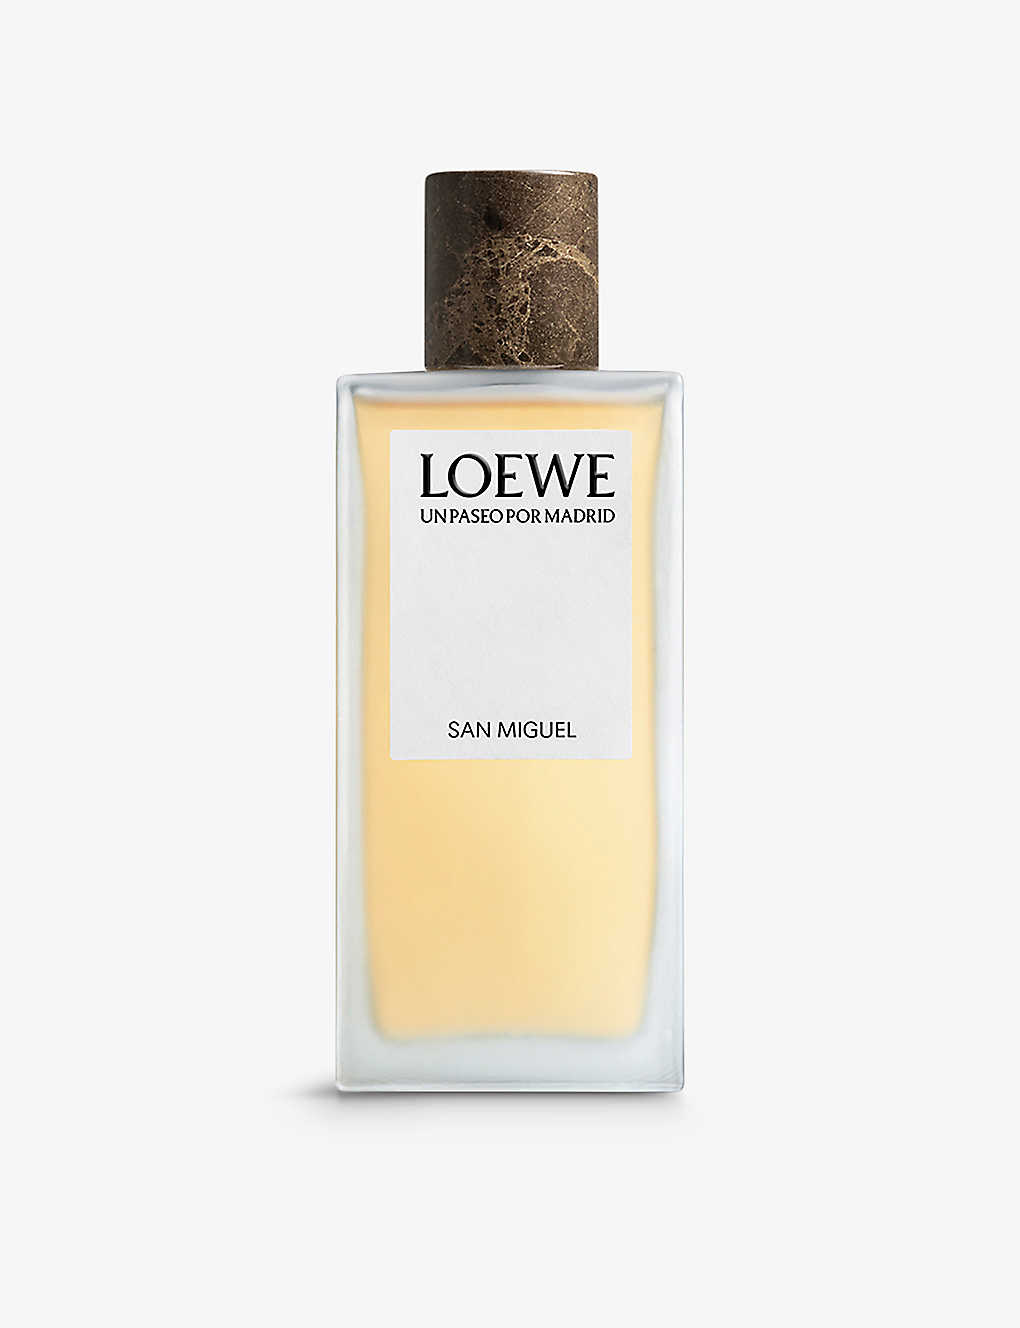 Loewe Un Paseo Por Madrid San Migue Eau De Parfum